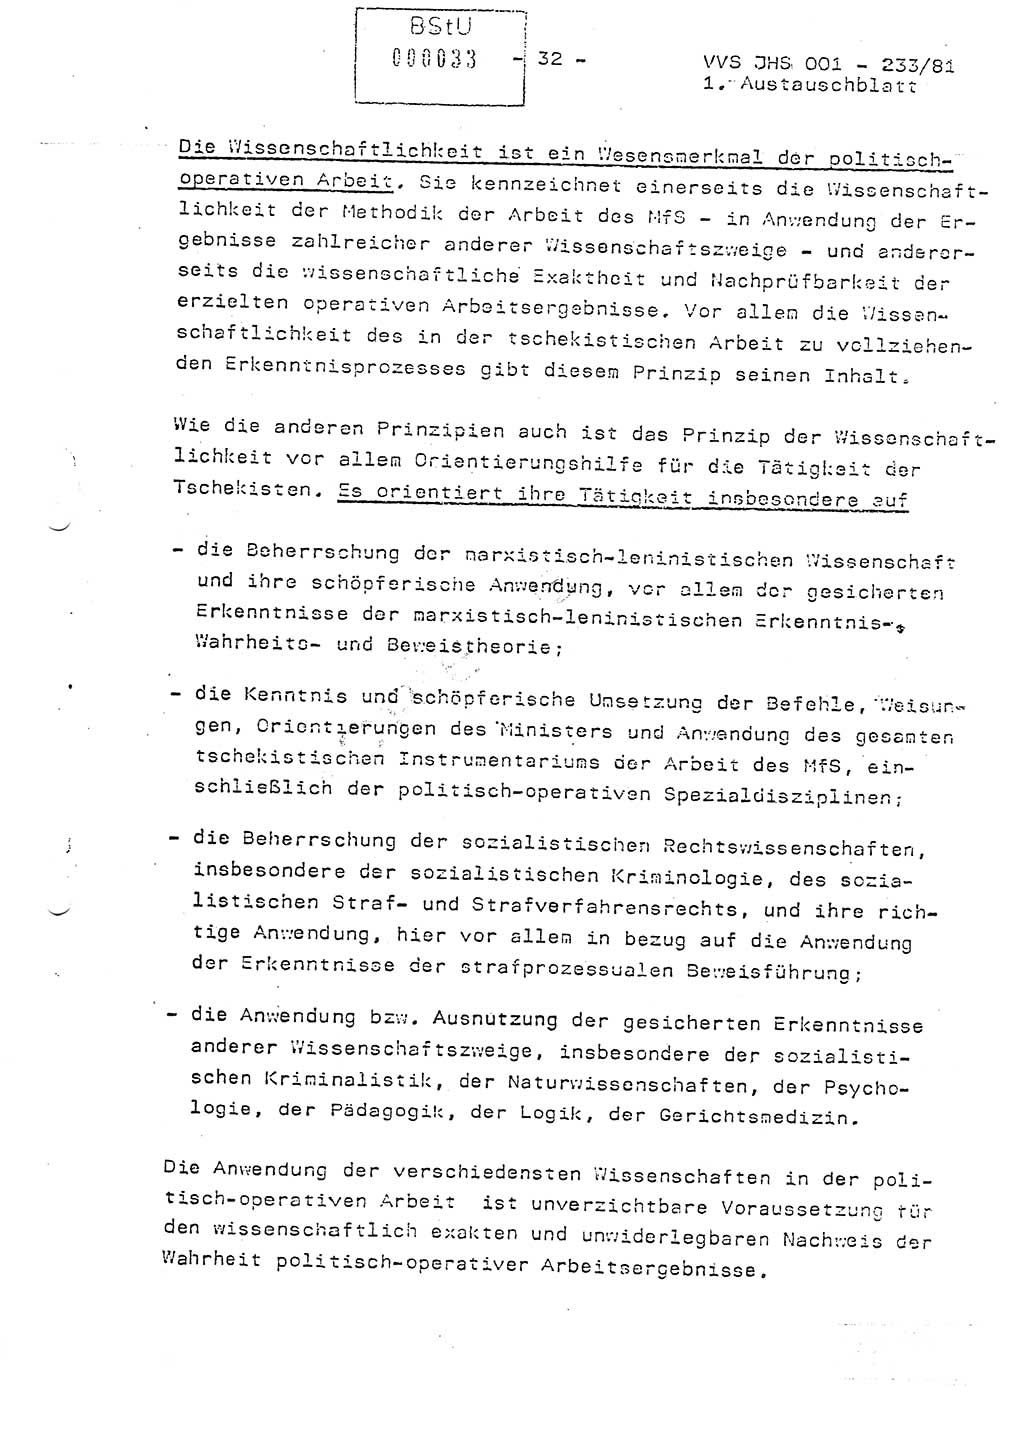 Dissertation Oberstleutnant Horst Zank (JHS), Oberstleutnant Dr. Karl-Heinz Knoblauch (JHS), Oberstleutnant Gustav-Adolf Kowalewski (HA Ⅸ), Oberstleutnant Wolfgang Plötner (HA Ⅸ), Ministerium für Staatssicherheit (MfS) [Deutsche Demokratische Republik (DDR)], Juristische Hochschule (JHS), Vertrauliche Verschlußsache (VVS) o001-233/81, Potsdam 1981, Blatt 33 (Diss. MfS DDR JHS VVS o001-233/81 1981, Bl. 33)